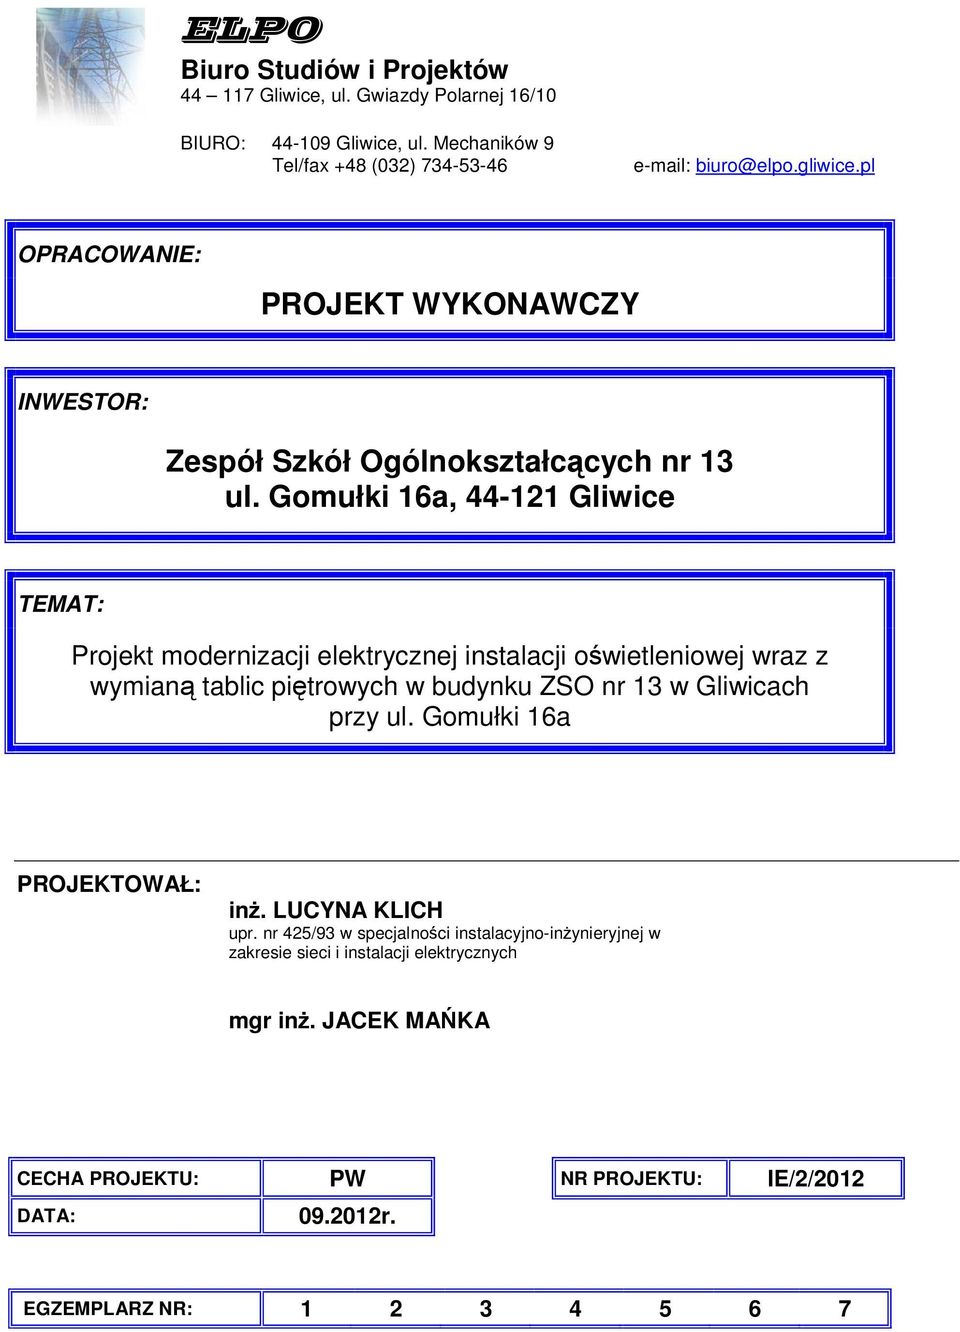 Gomułki 16a, 44-121 Gliwice TEMAT: Projekt modernizacji elektrycznej instalacji owietleniowej wraz z wymian tablic pitrowych w budynku ZSO nr 13 w Gliwicach przy ul.